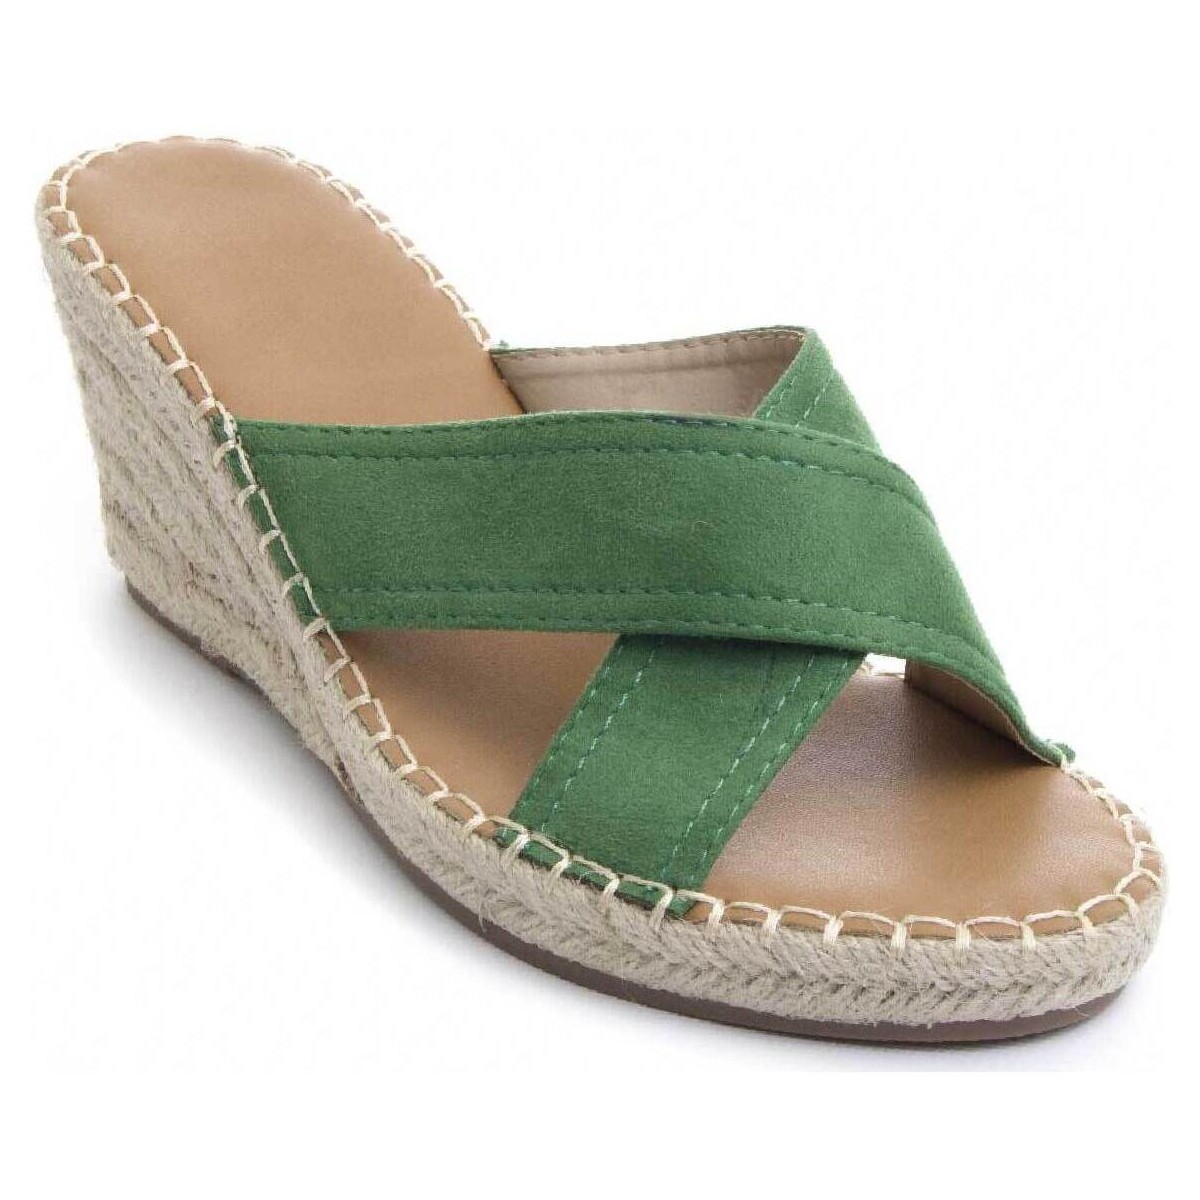 Παπούτσια Γυναίκα Σανδάλια / Πέδιλα Bozoom 83238 Green